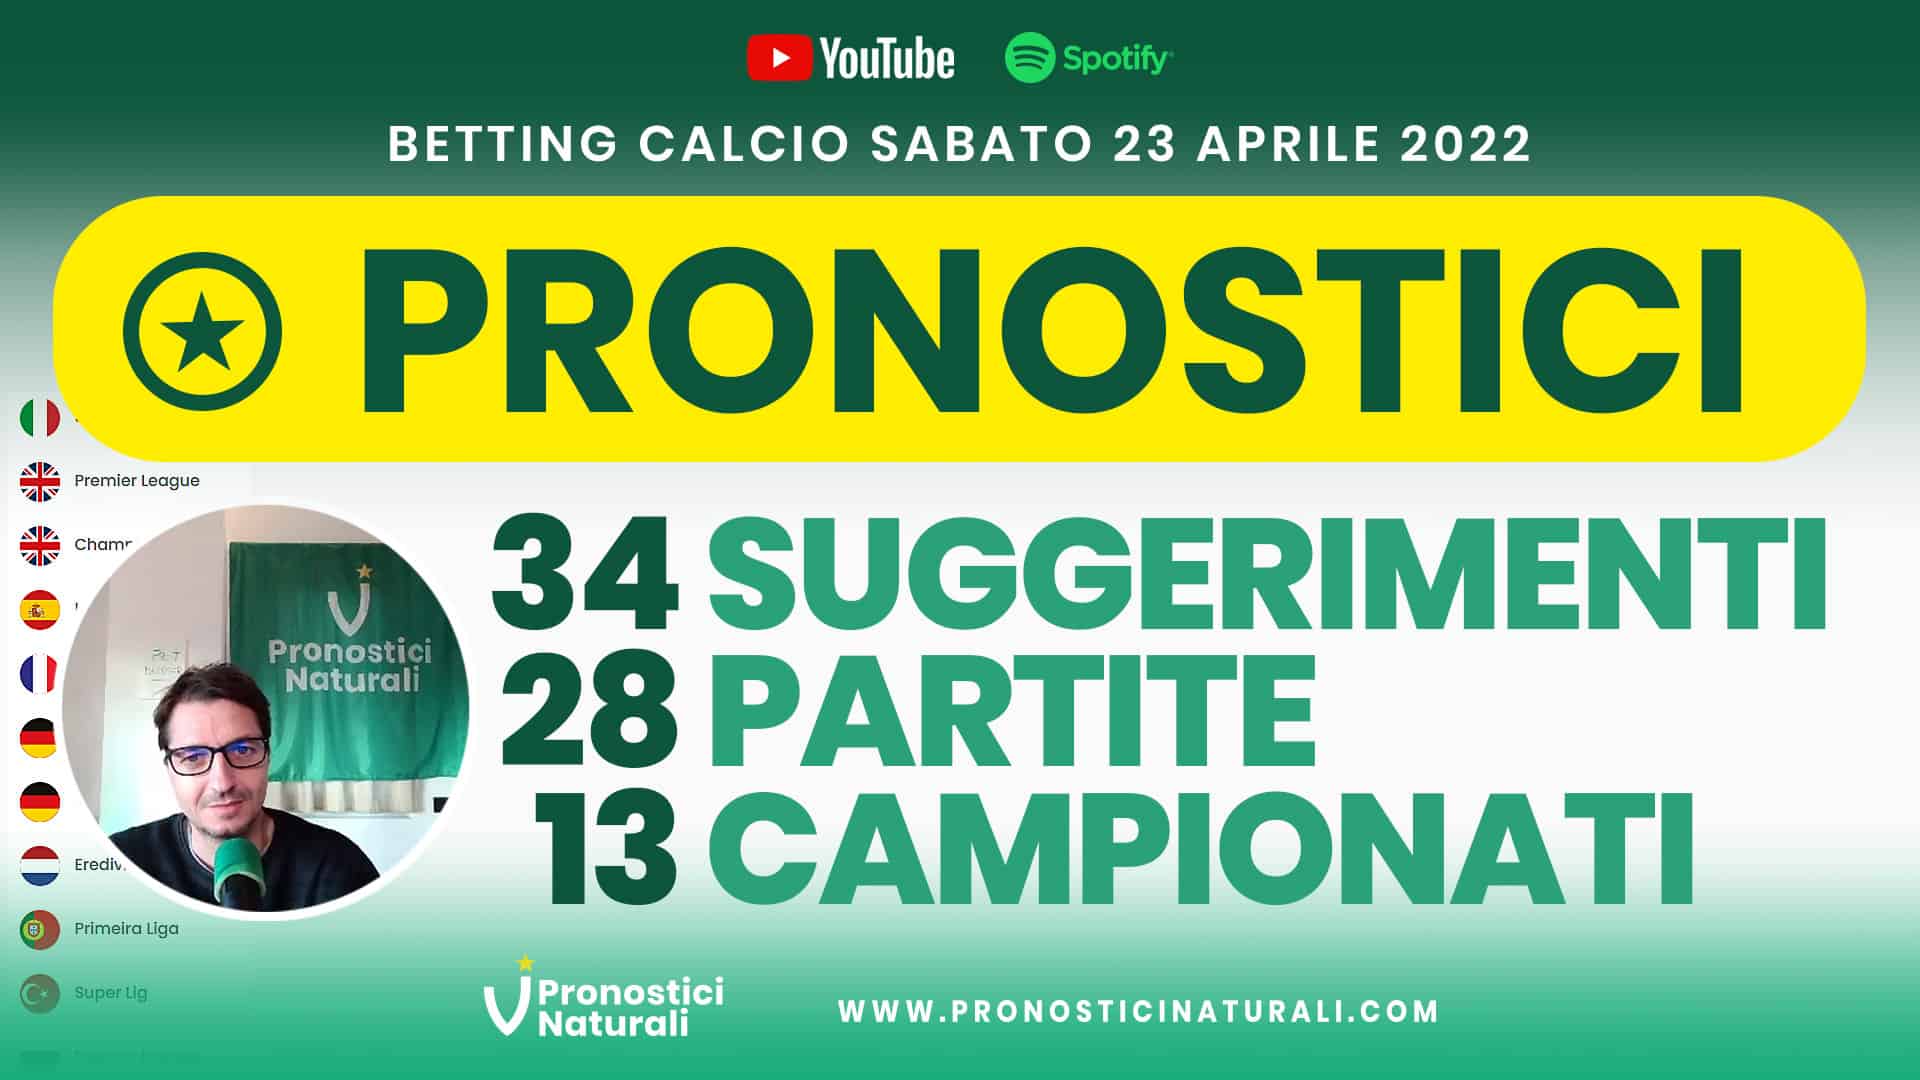 Pronostici Naturali Video Analisi Scommesse Betting Calcio Analisi Pre Partite Sabato 23 Aprile 2022